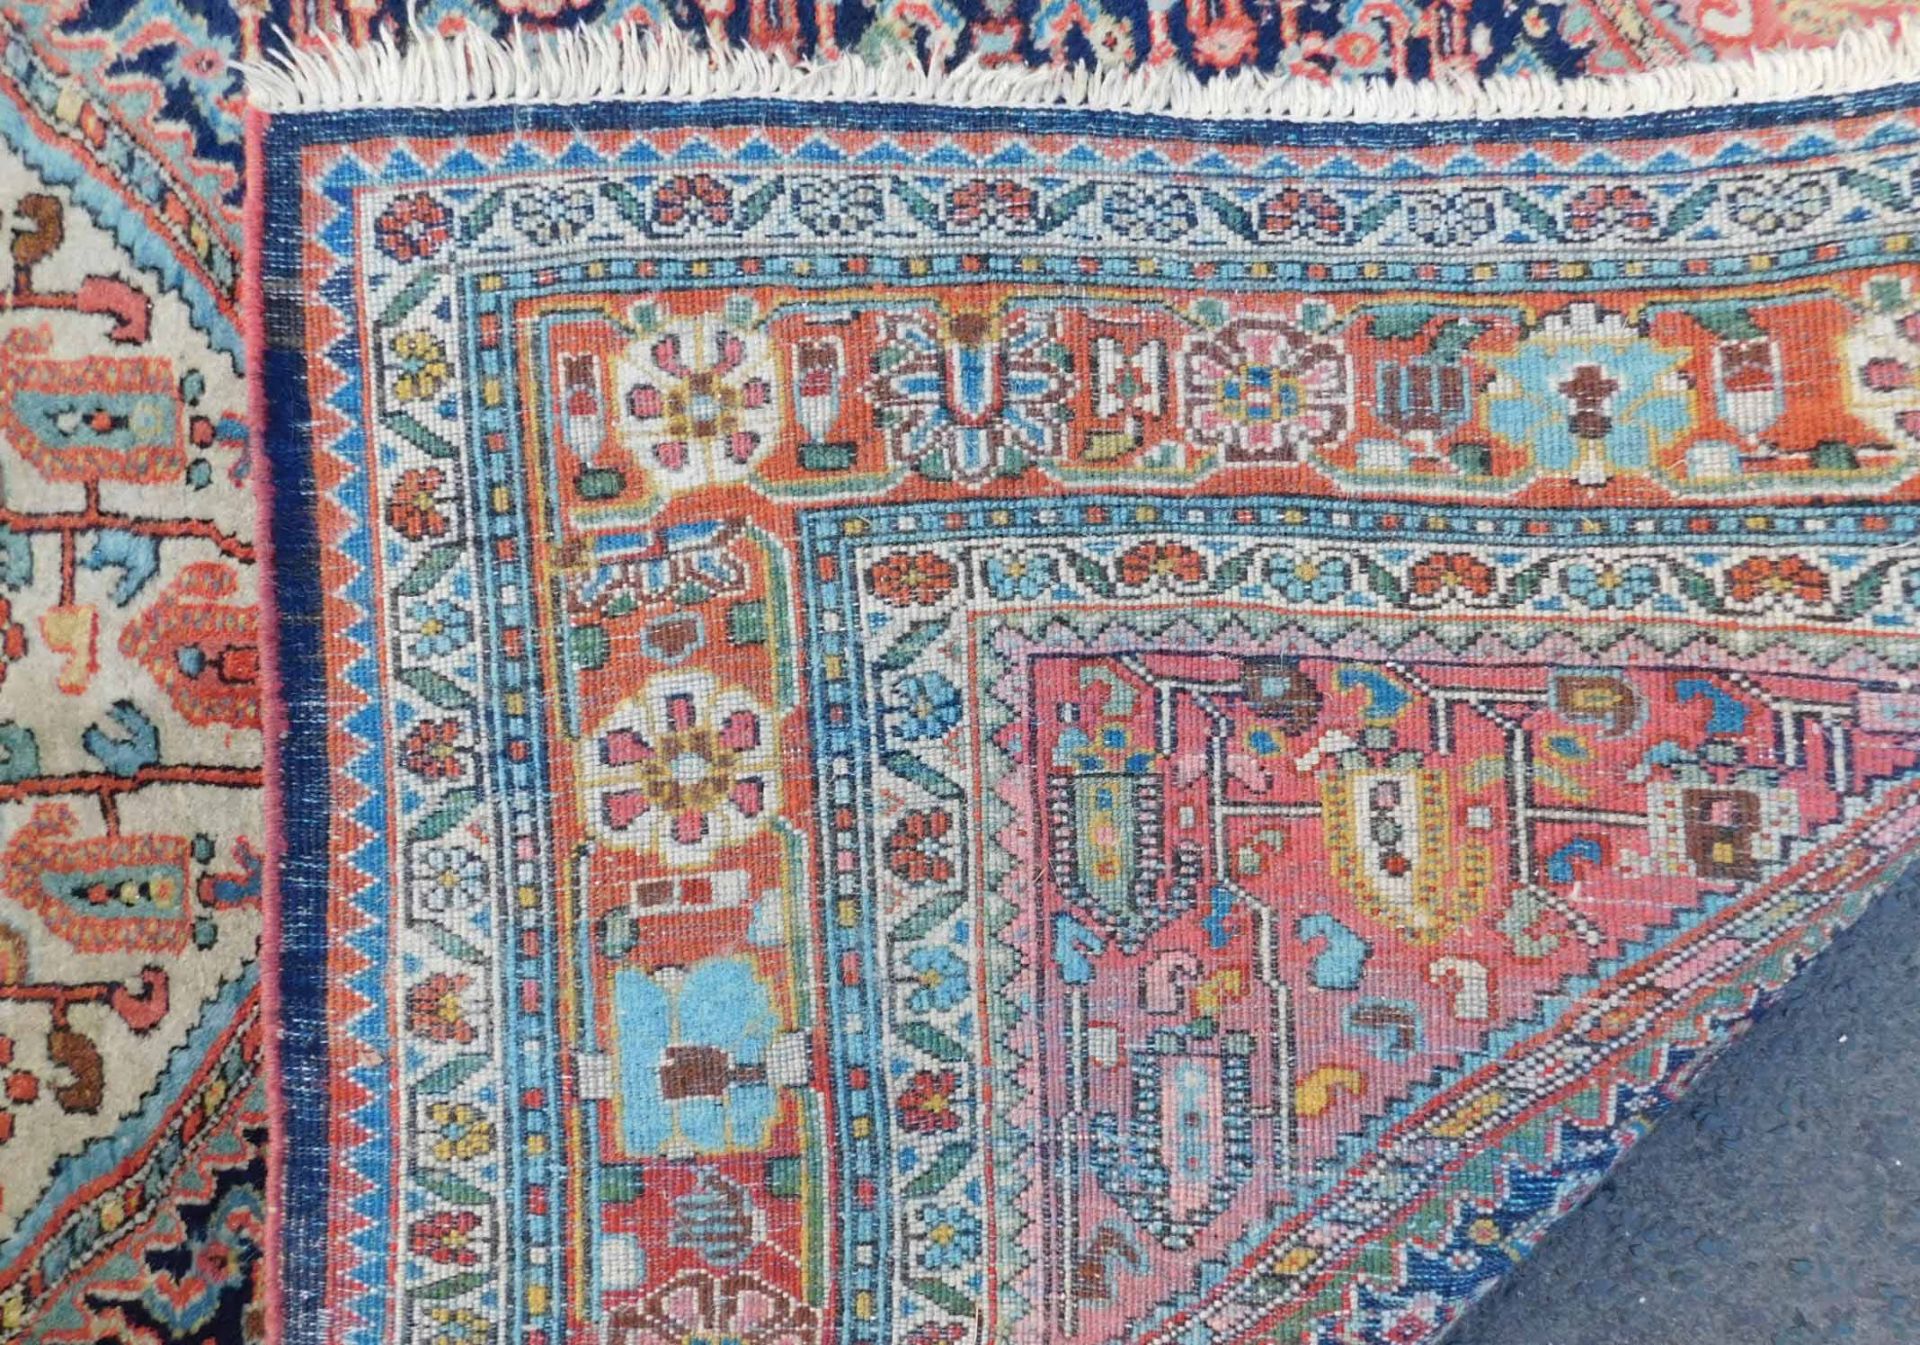 Saruk Jozan Persian carpet. Iran. Antique, around 100-130 years old. - Image 5 of 6